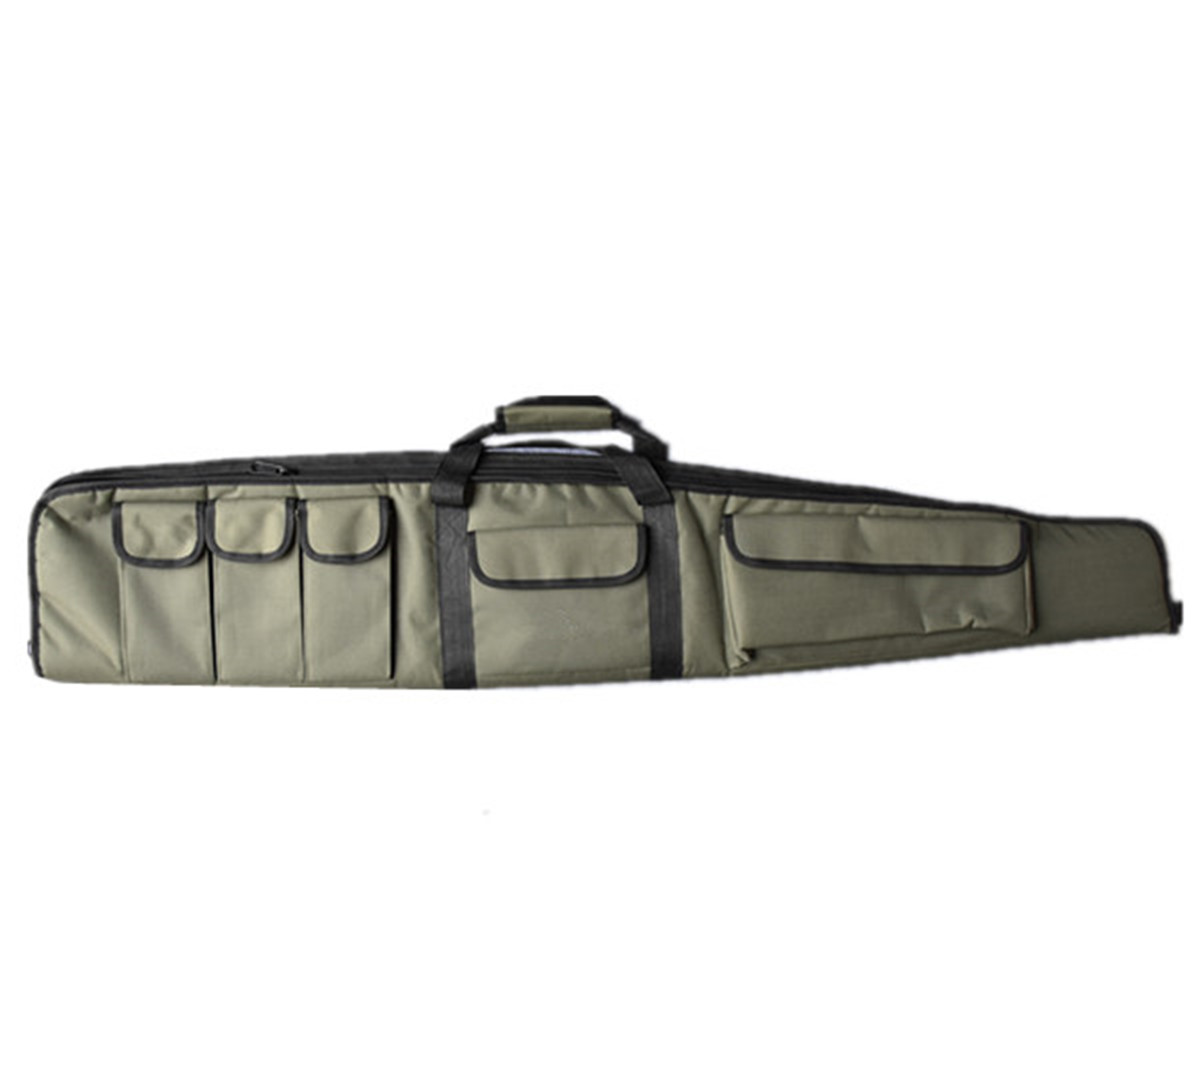 हंटिंग डबल गन बैग 52.5 इंच लंबाई कॉर्डुरा नायलॉन फैब्रिक